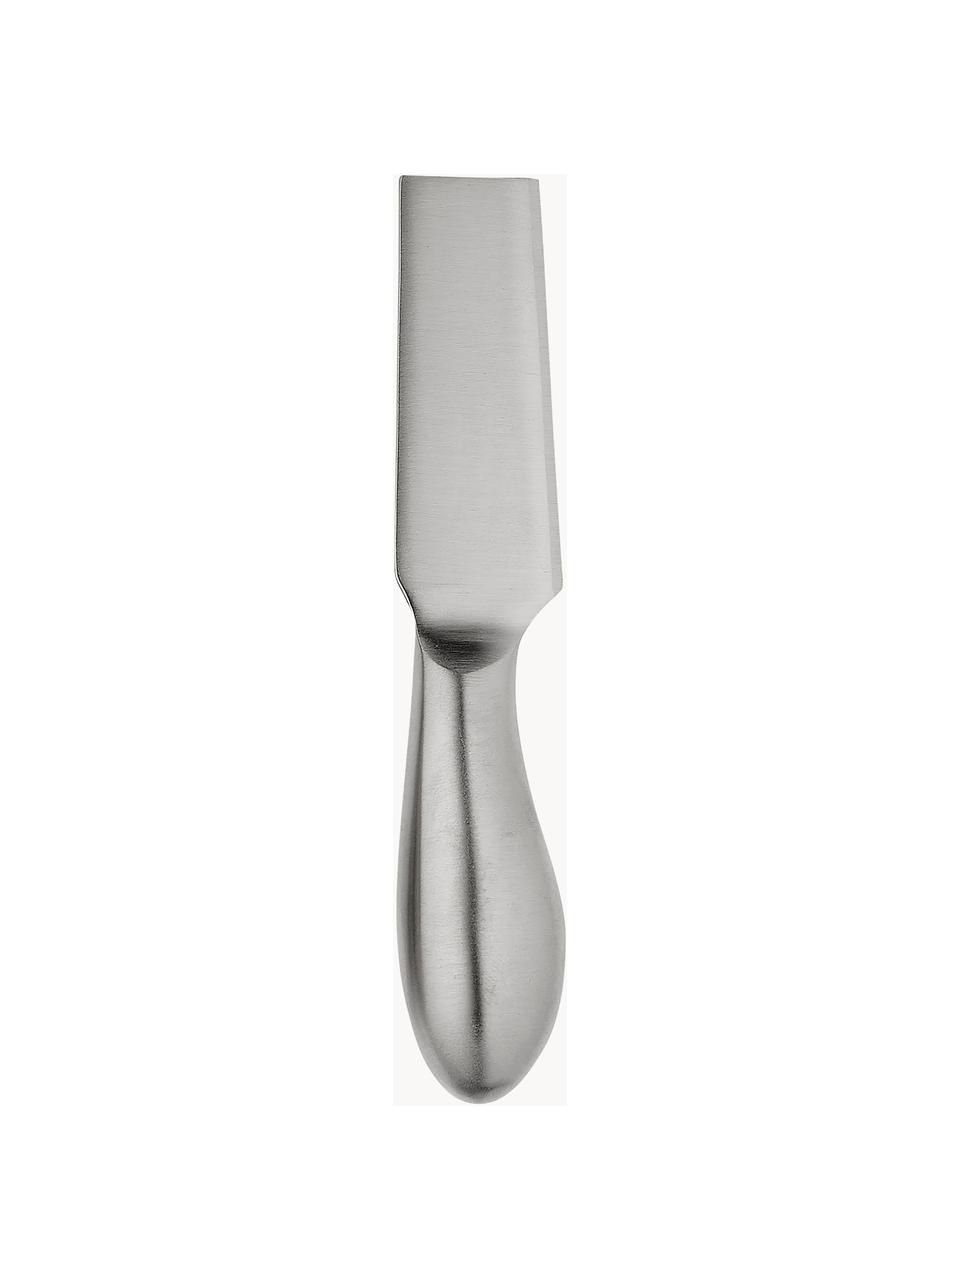 Sada nožů na sýr Fromagerie, 3 ks, Potažená nerezová ocel

Příbory jsou vyrobeny z nerezové oceli. Jsou pevné, nerezaví a jsou odolné vůči bakteriím., Satinovaná kartáčovaná stříbrná, D 17 cm